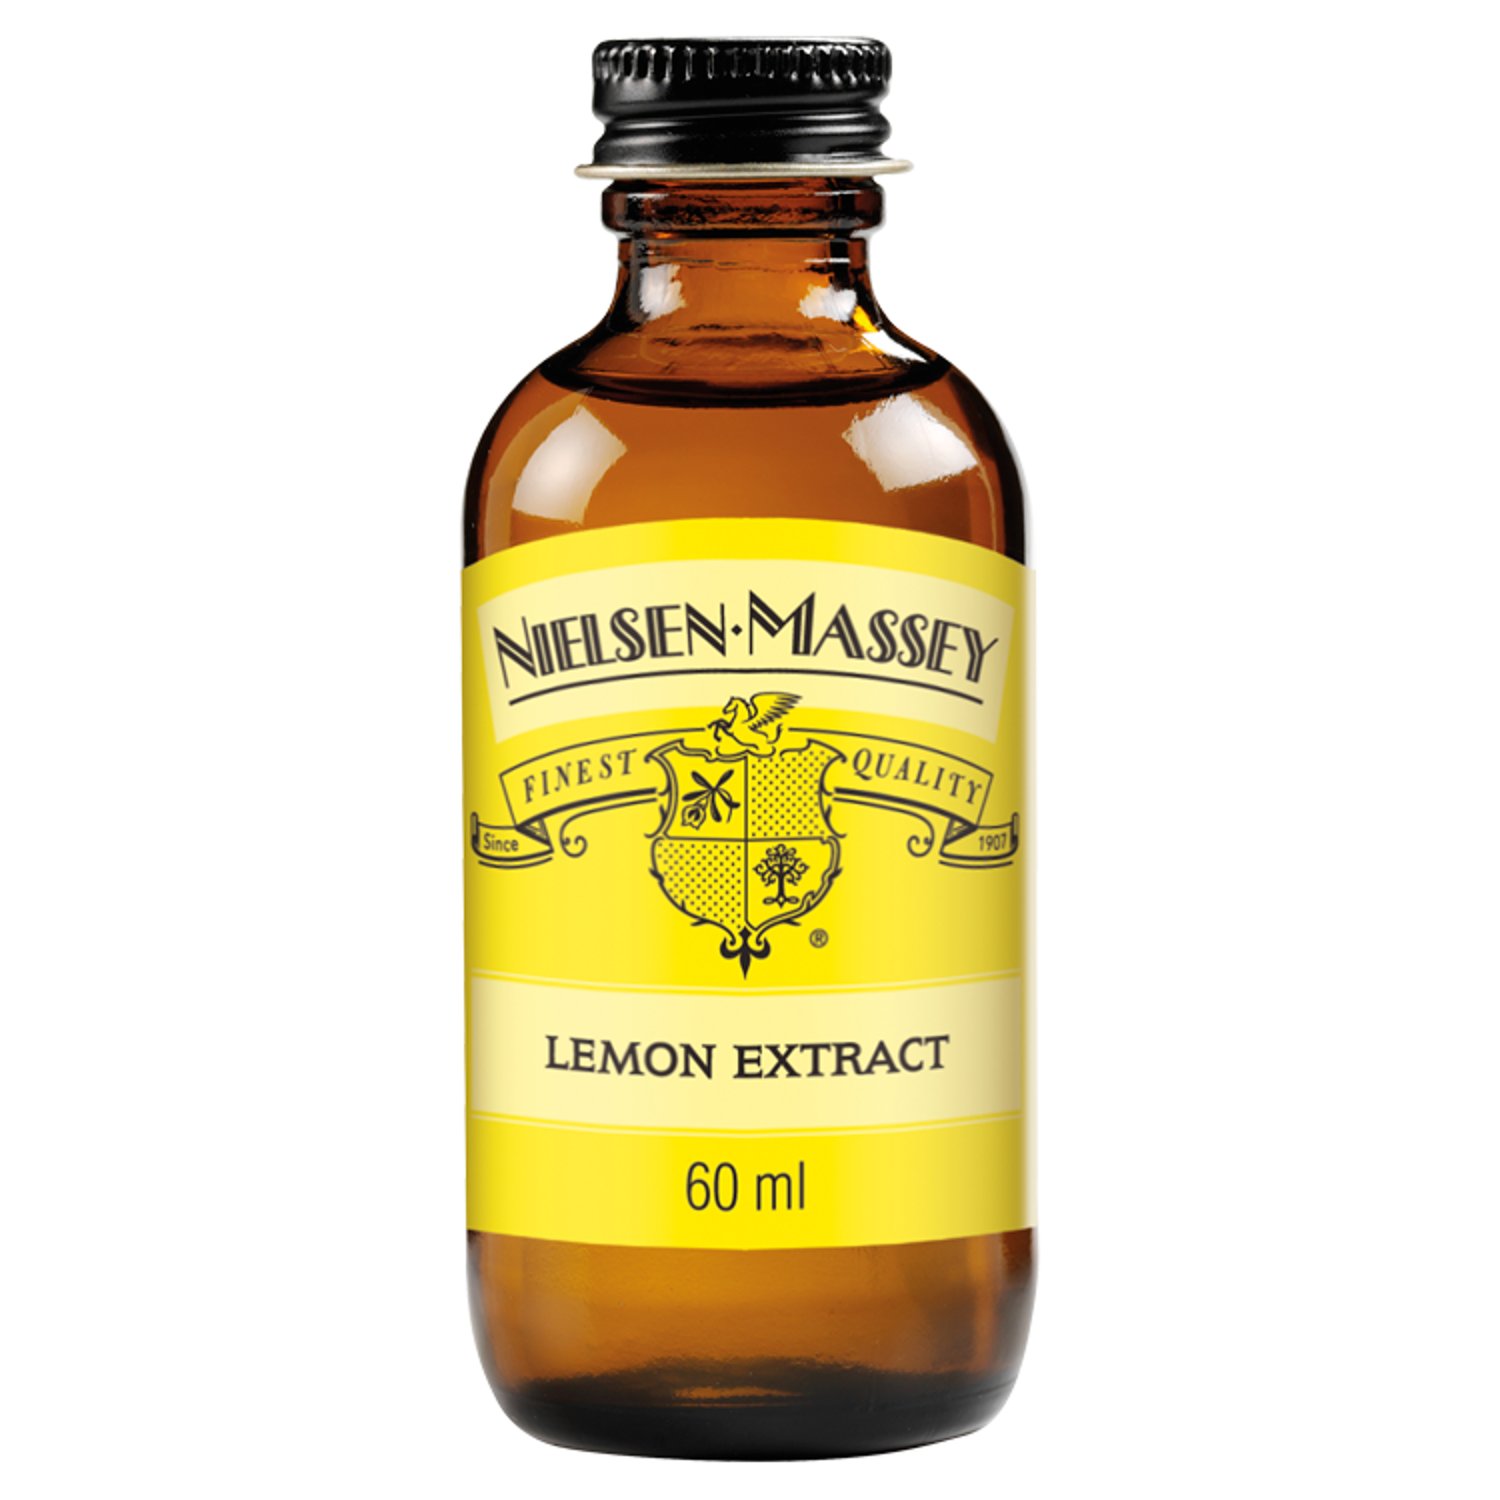 Nielsen Massey Lemon Extract (60 ml)